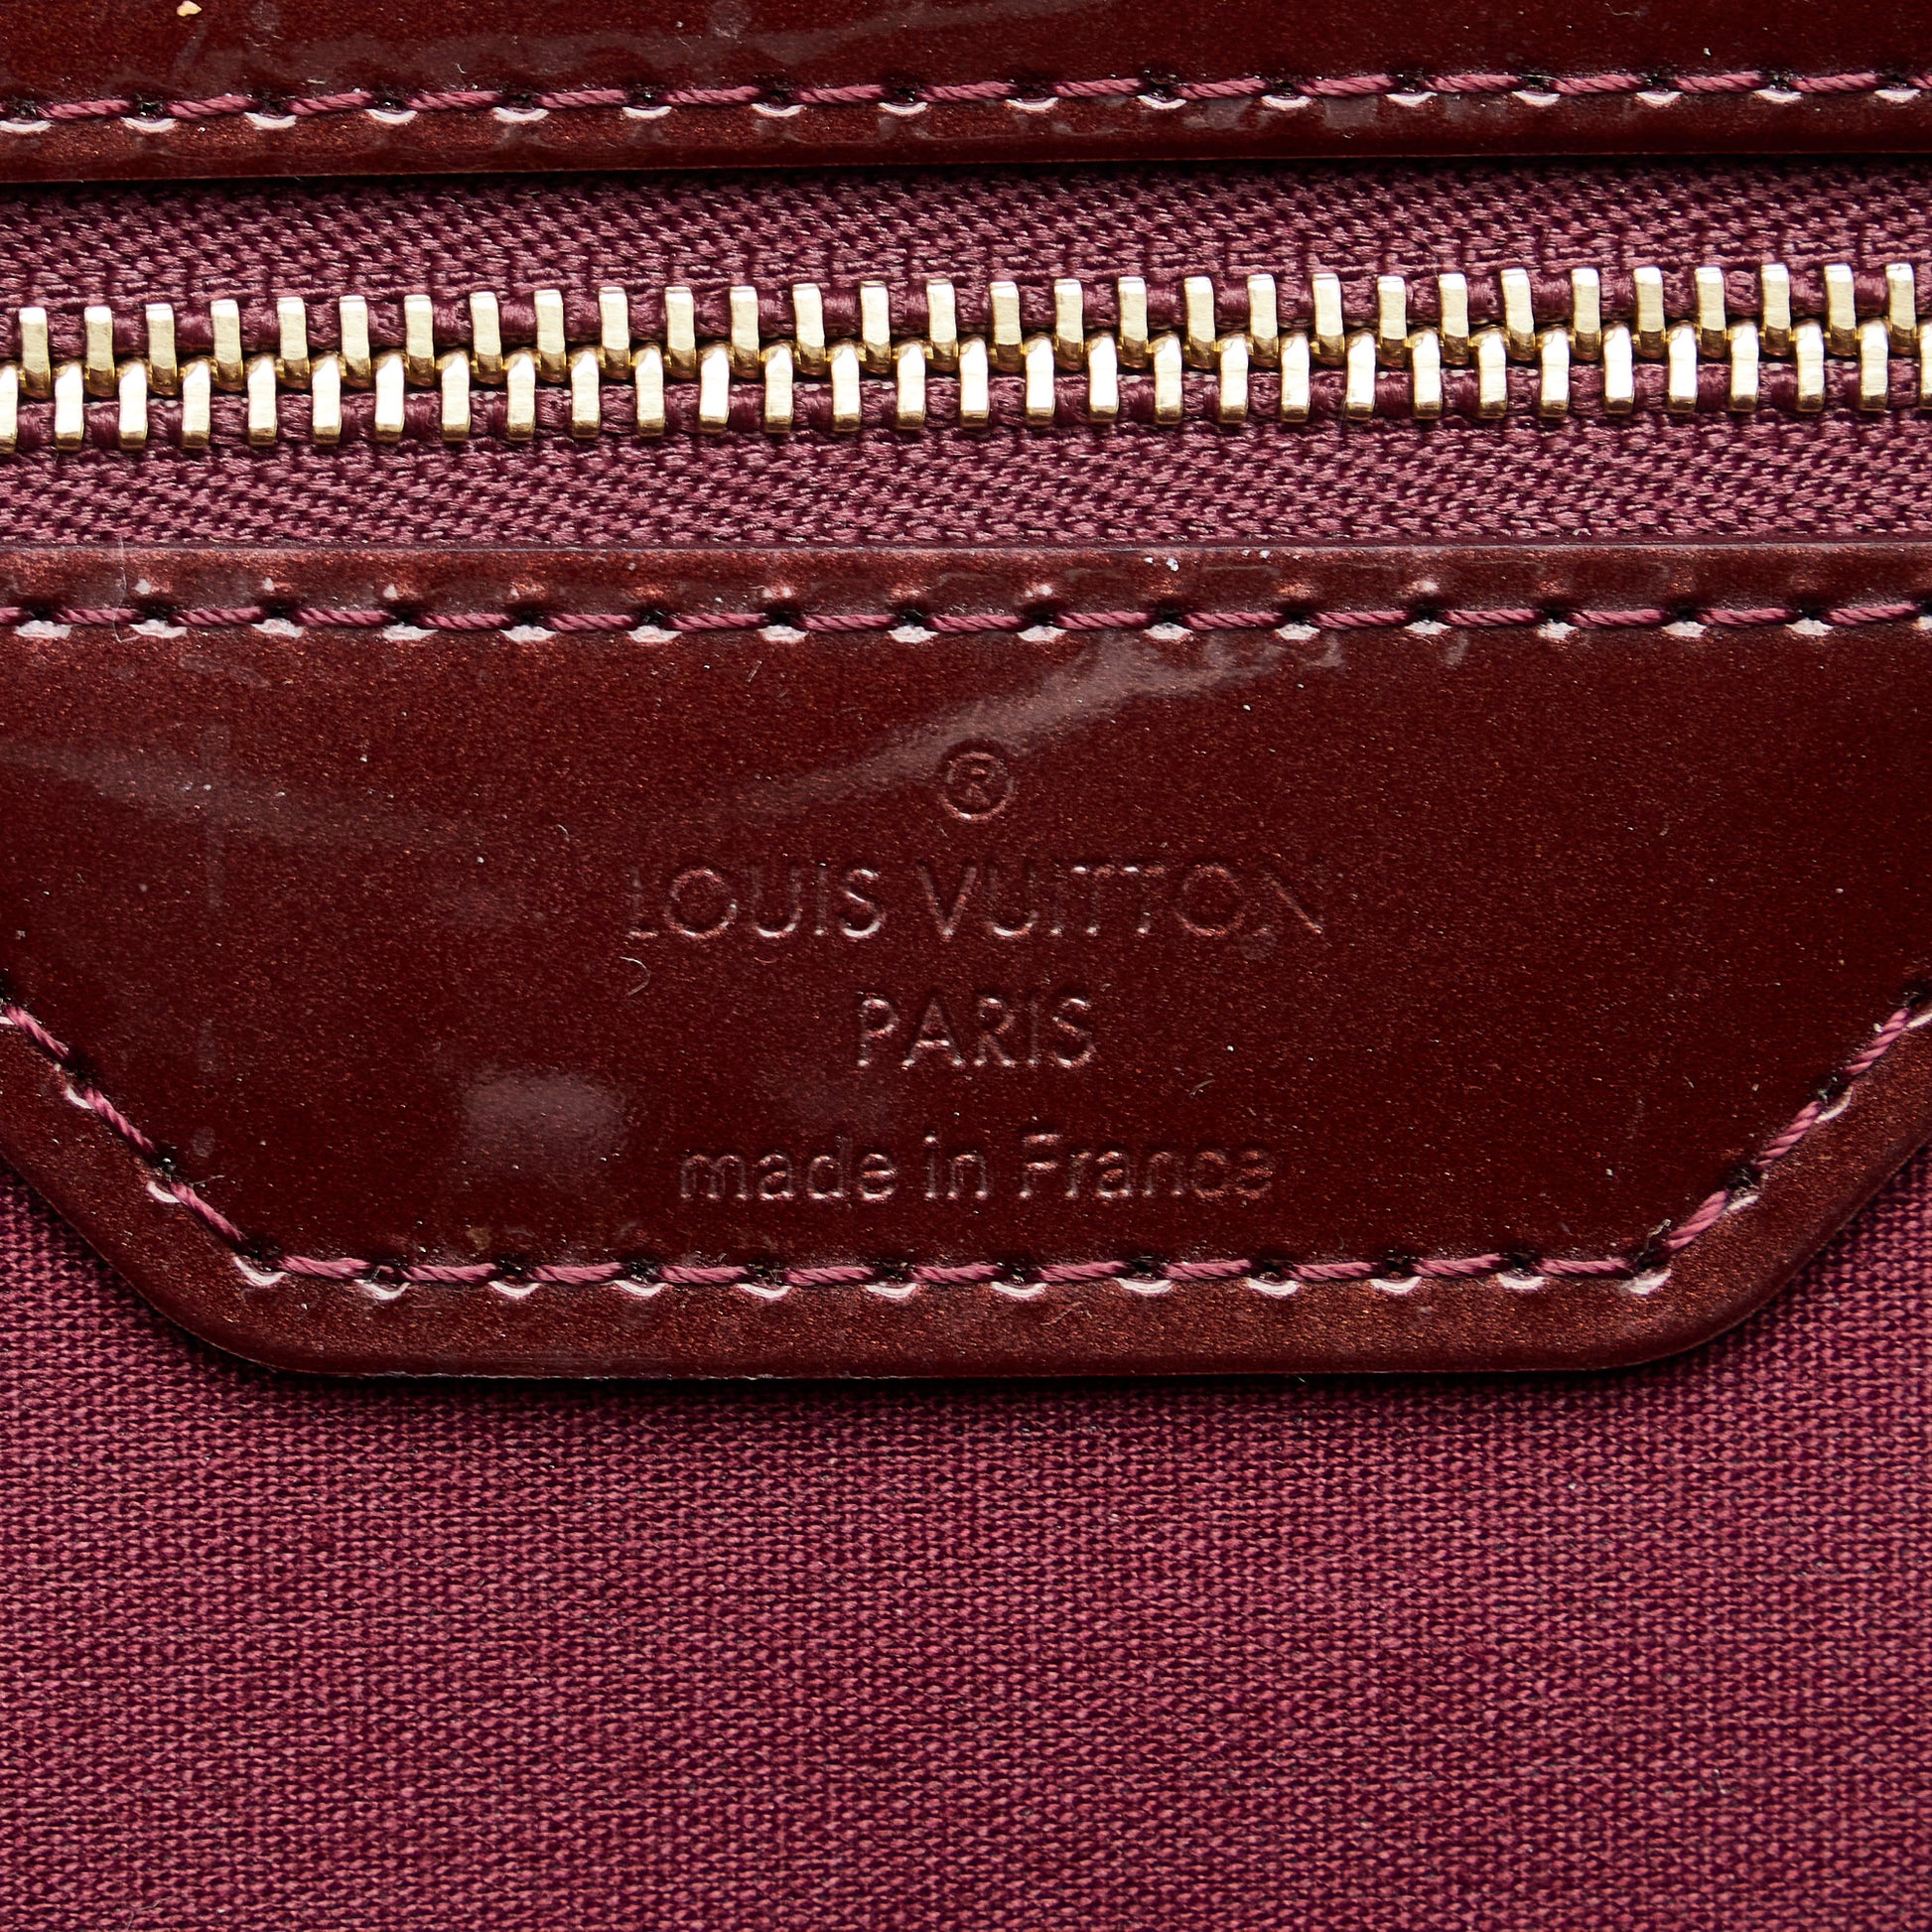 Louis Vuitton Wilshire Tote 390685